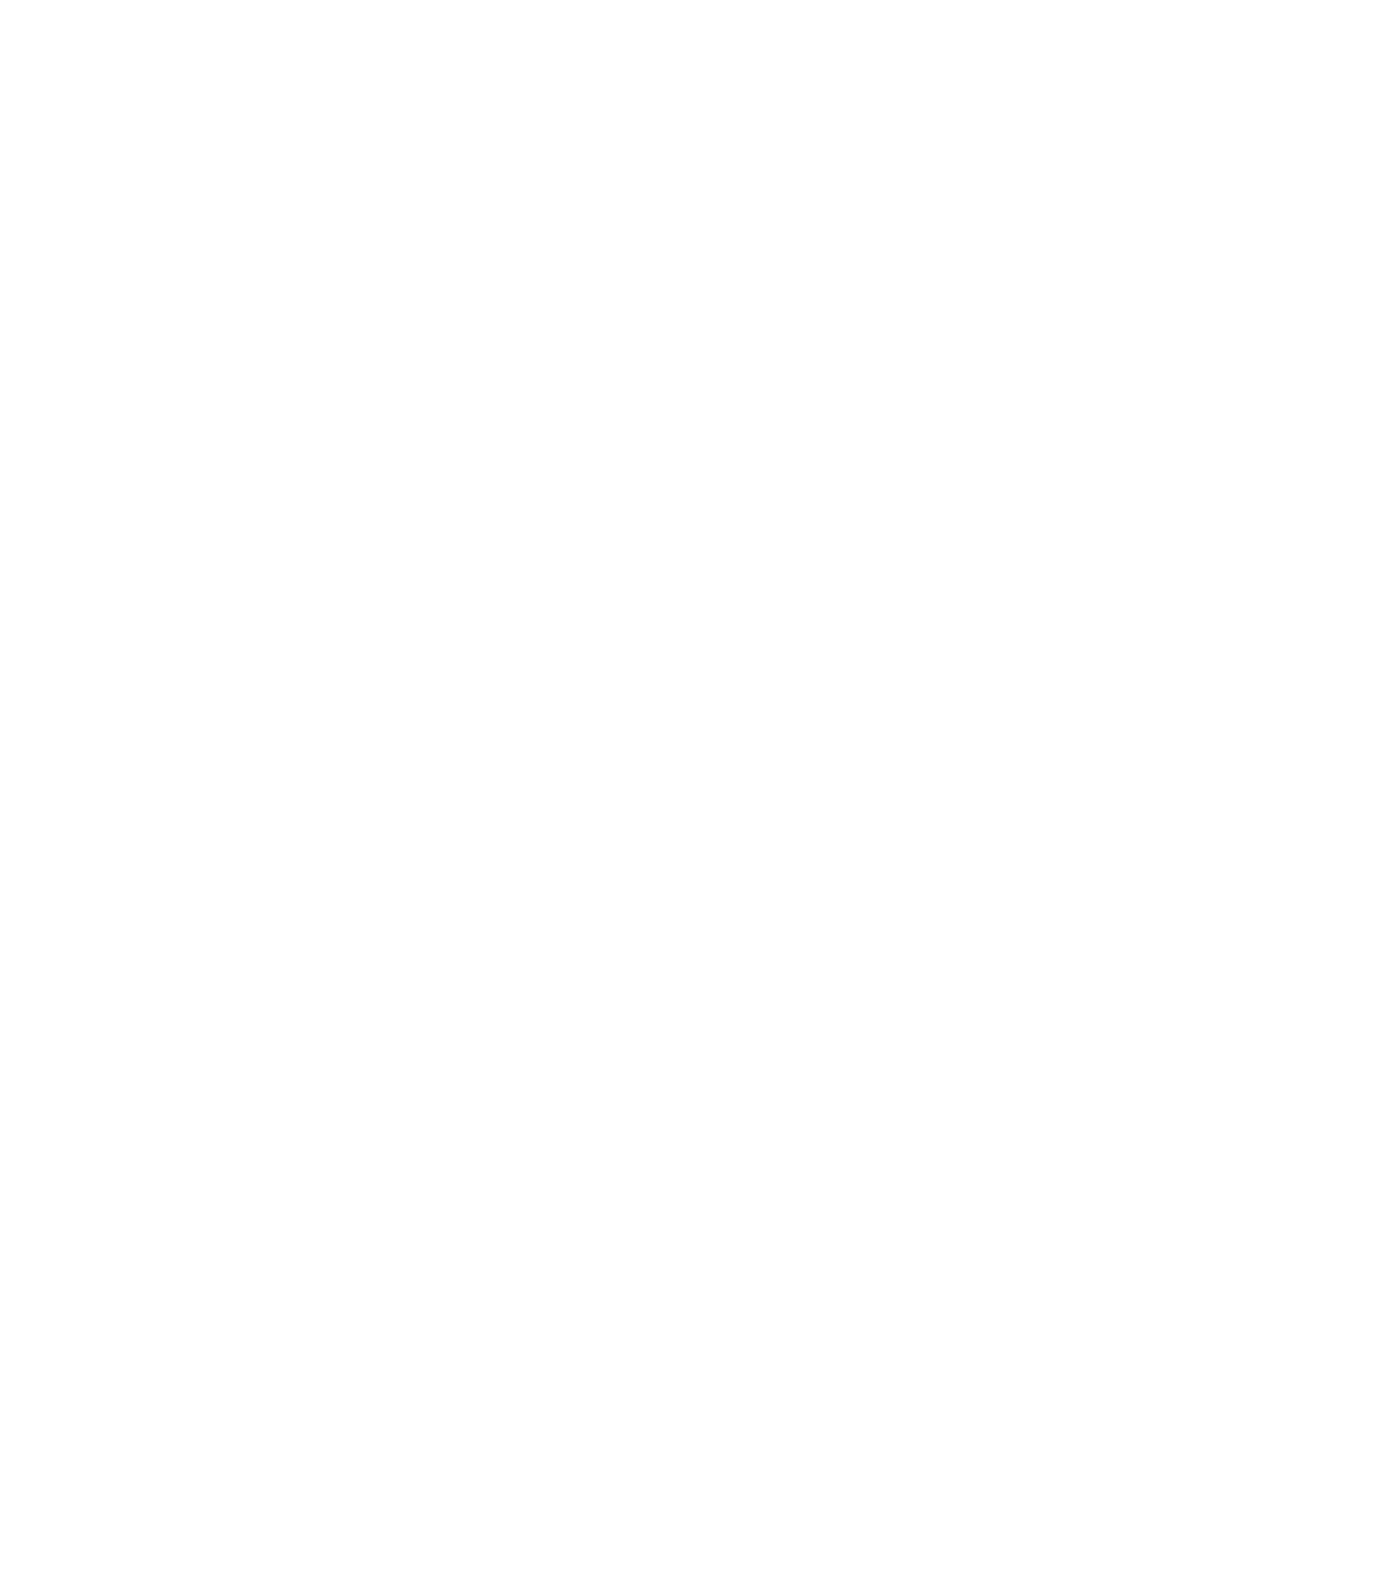 ProShares logo for dark backgrounds (transparent PNG)